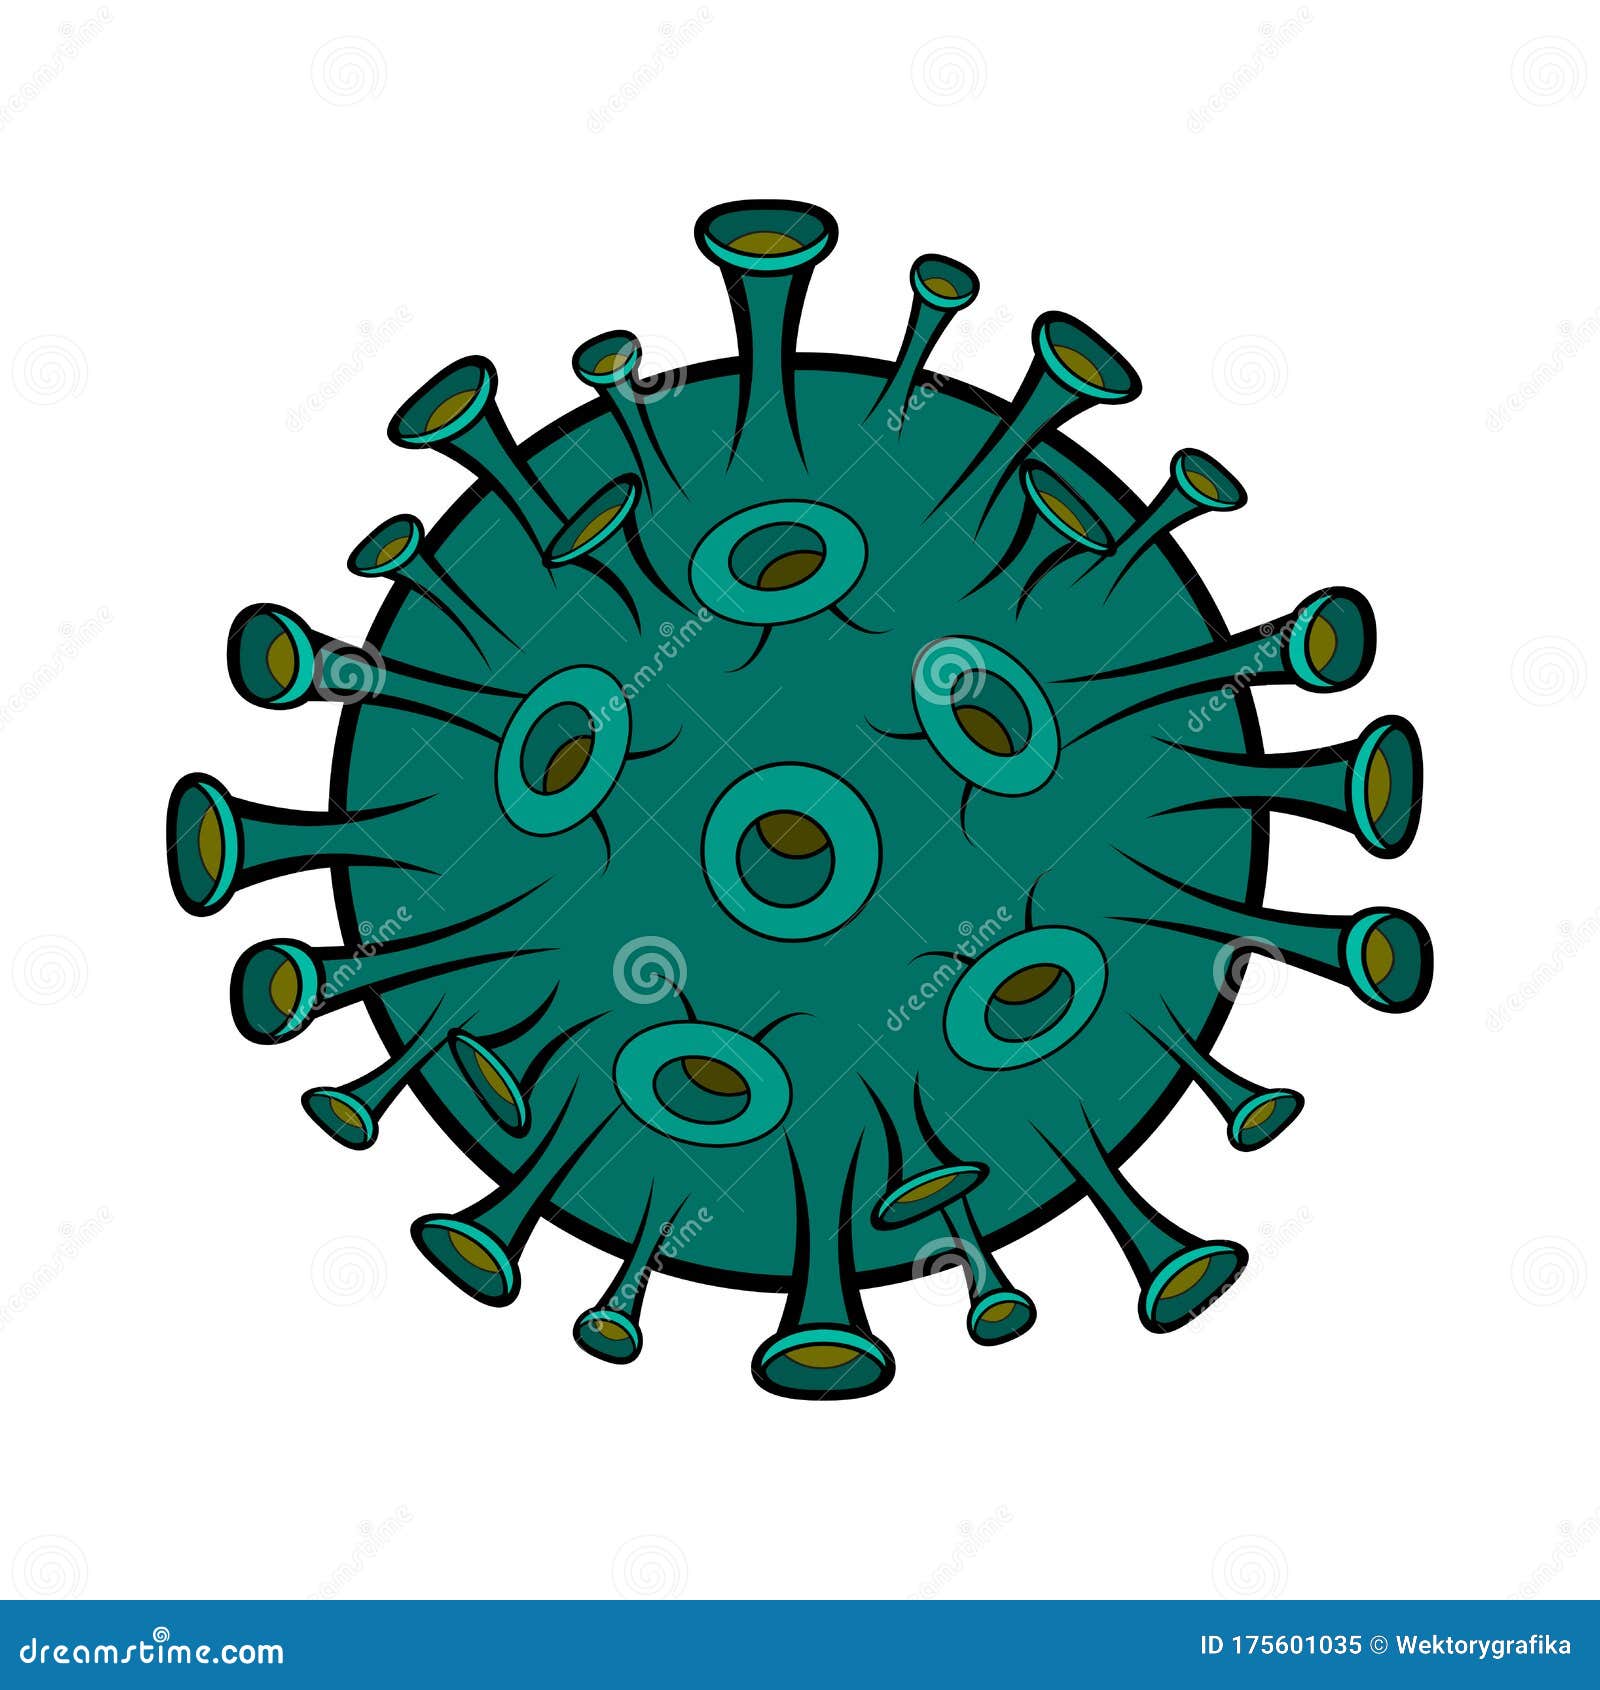 coronavirus-cartoon-illustration-isolate